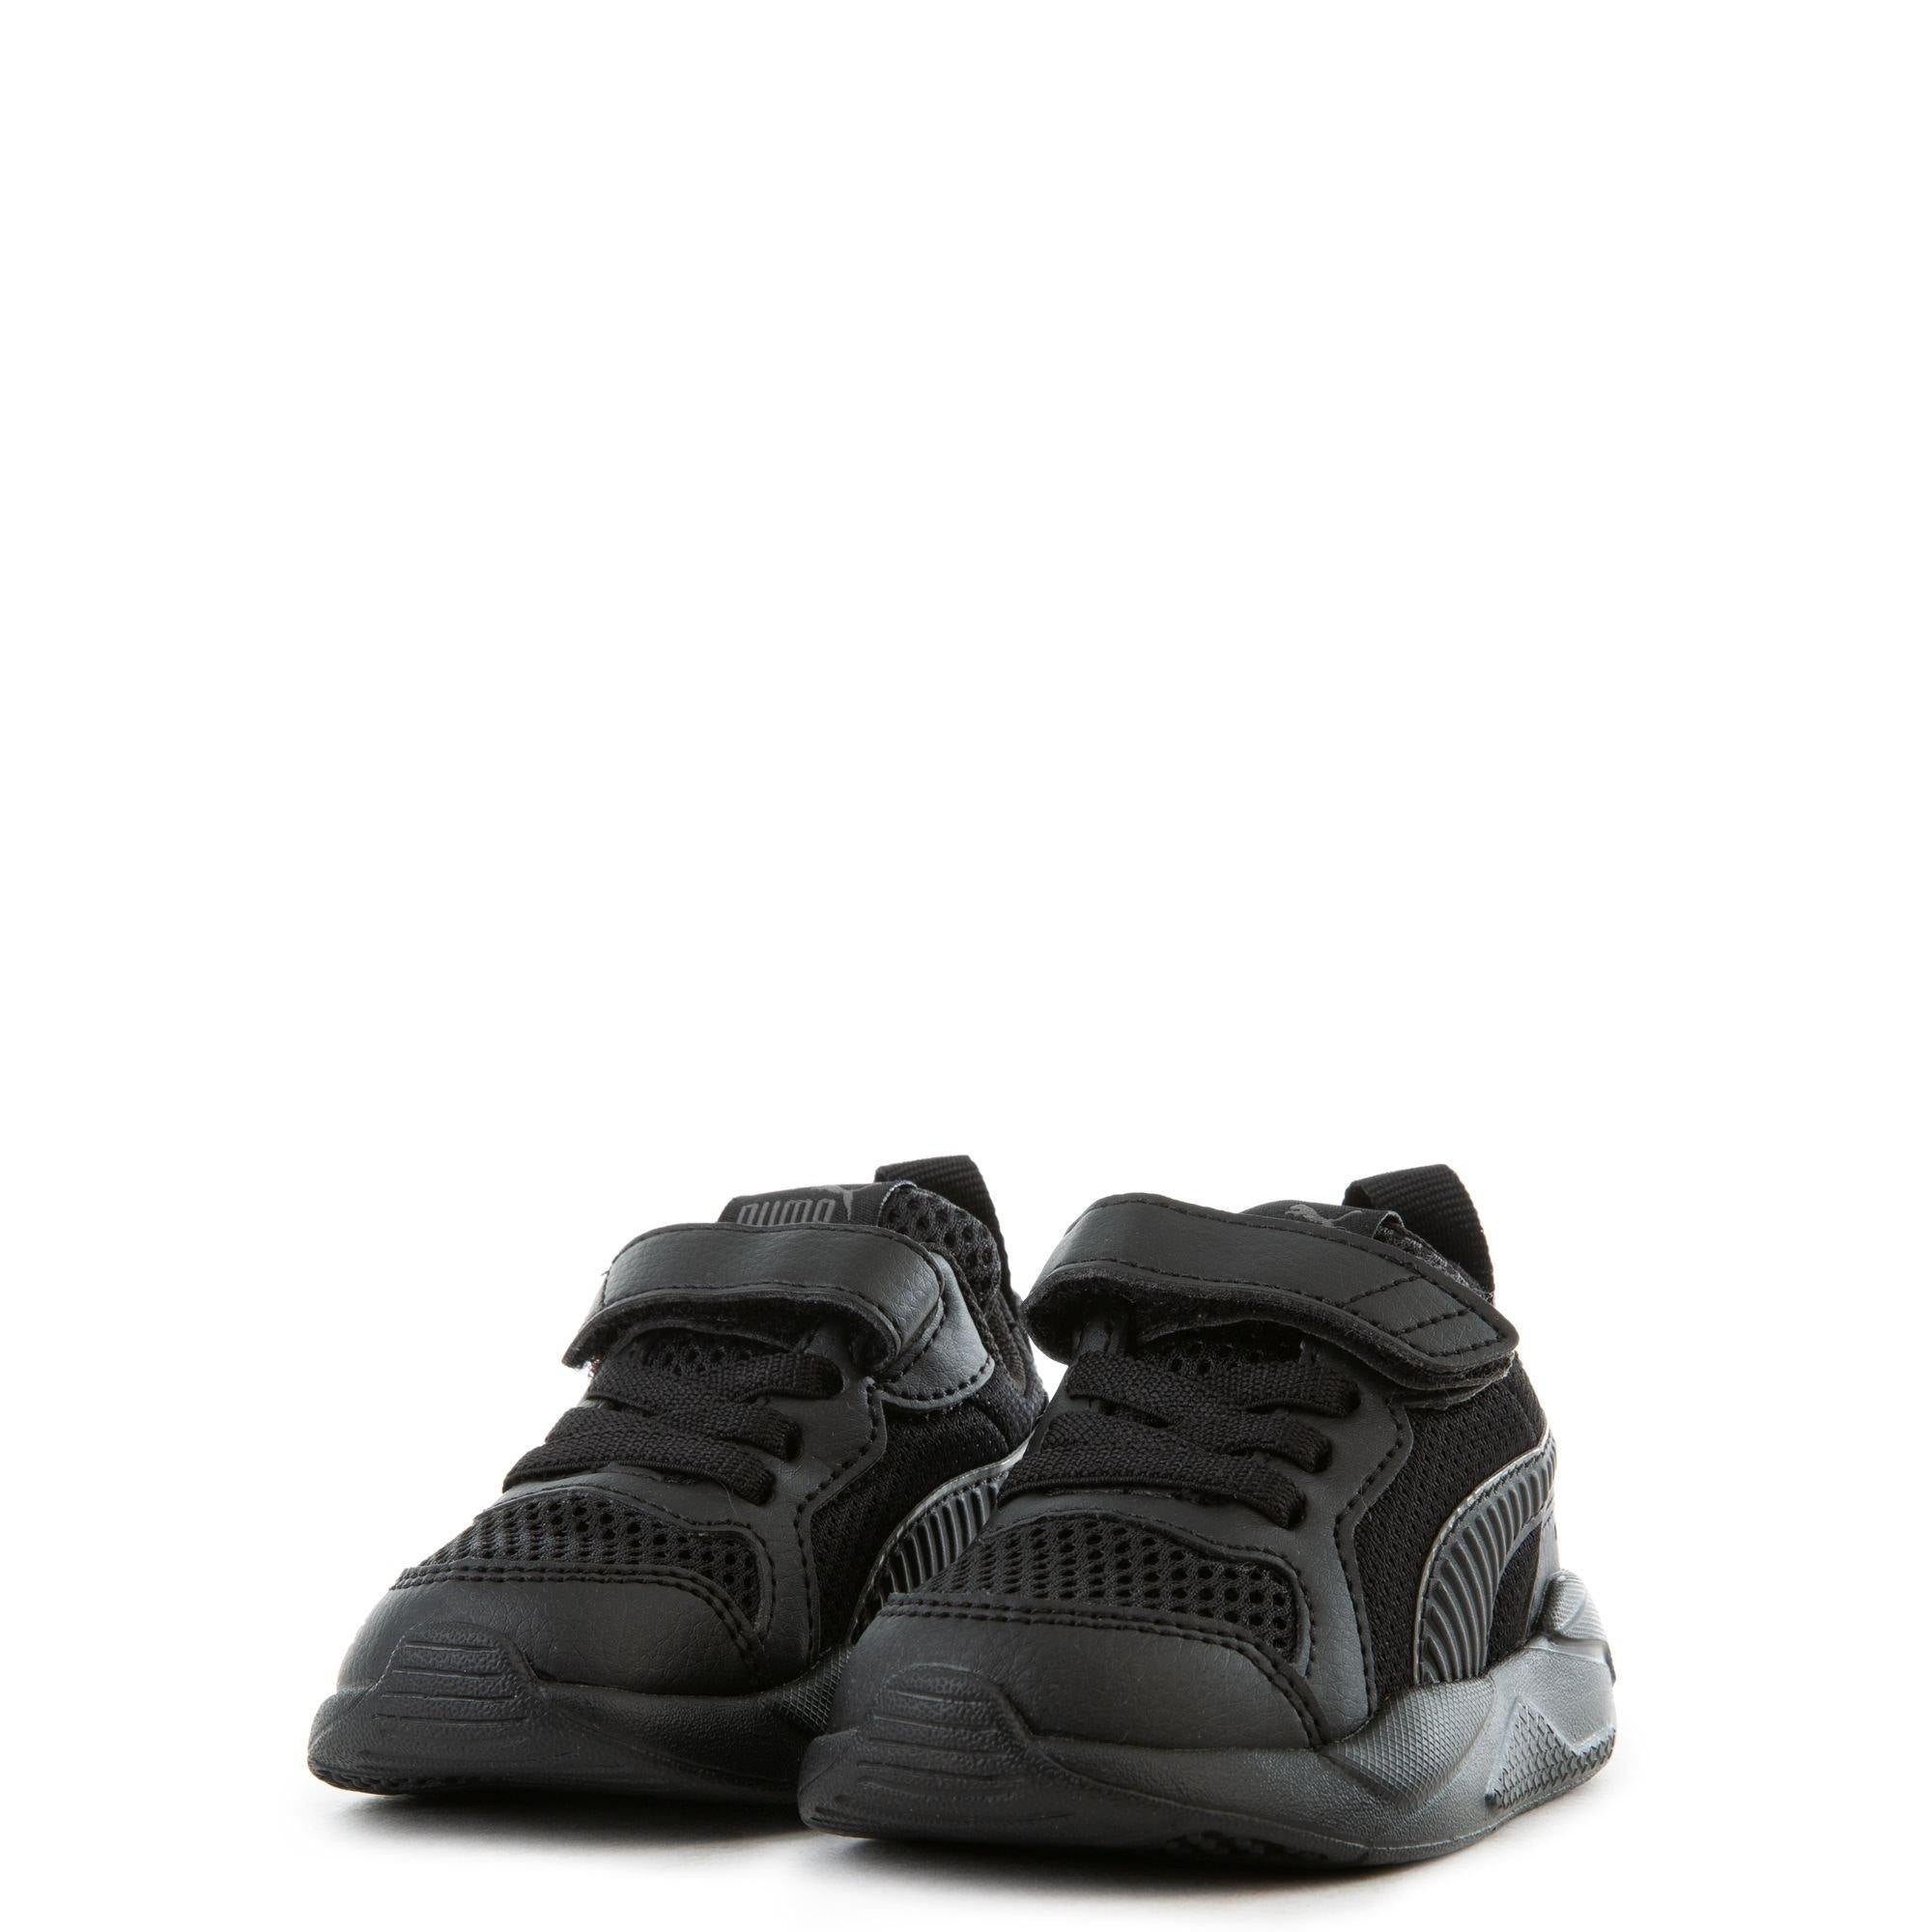 P-O37 (X-Ray ac inf Children puma black/dark shadow) 121992750 - Otahuhu Shoes